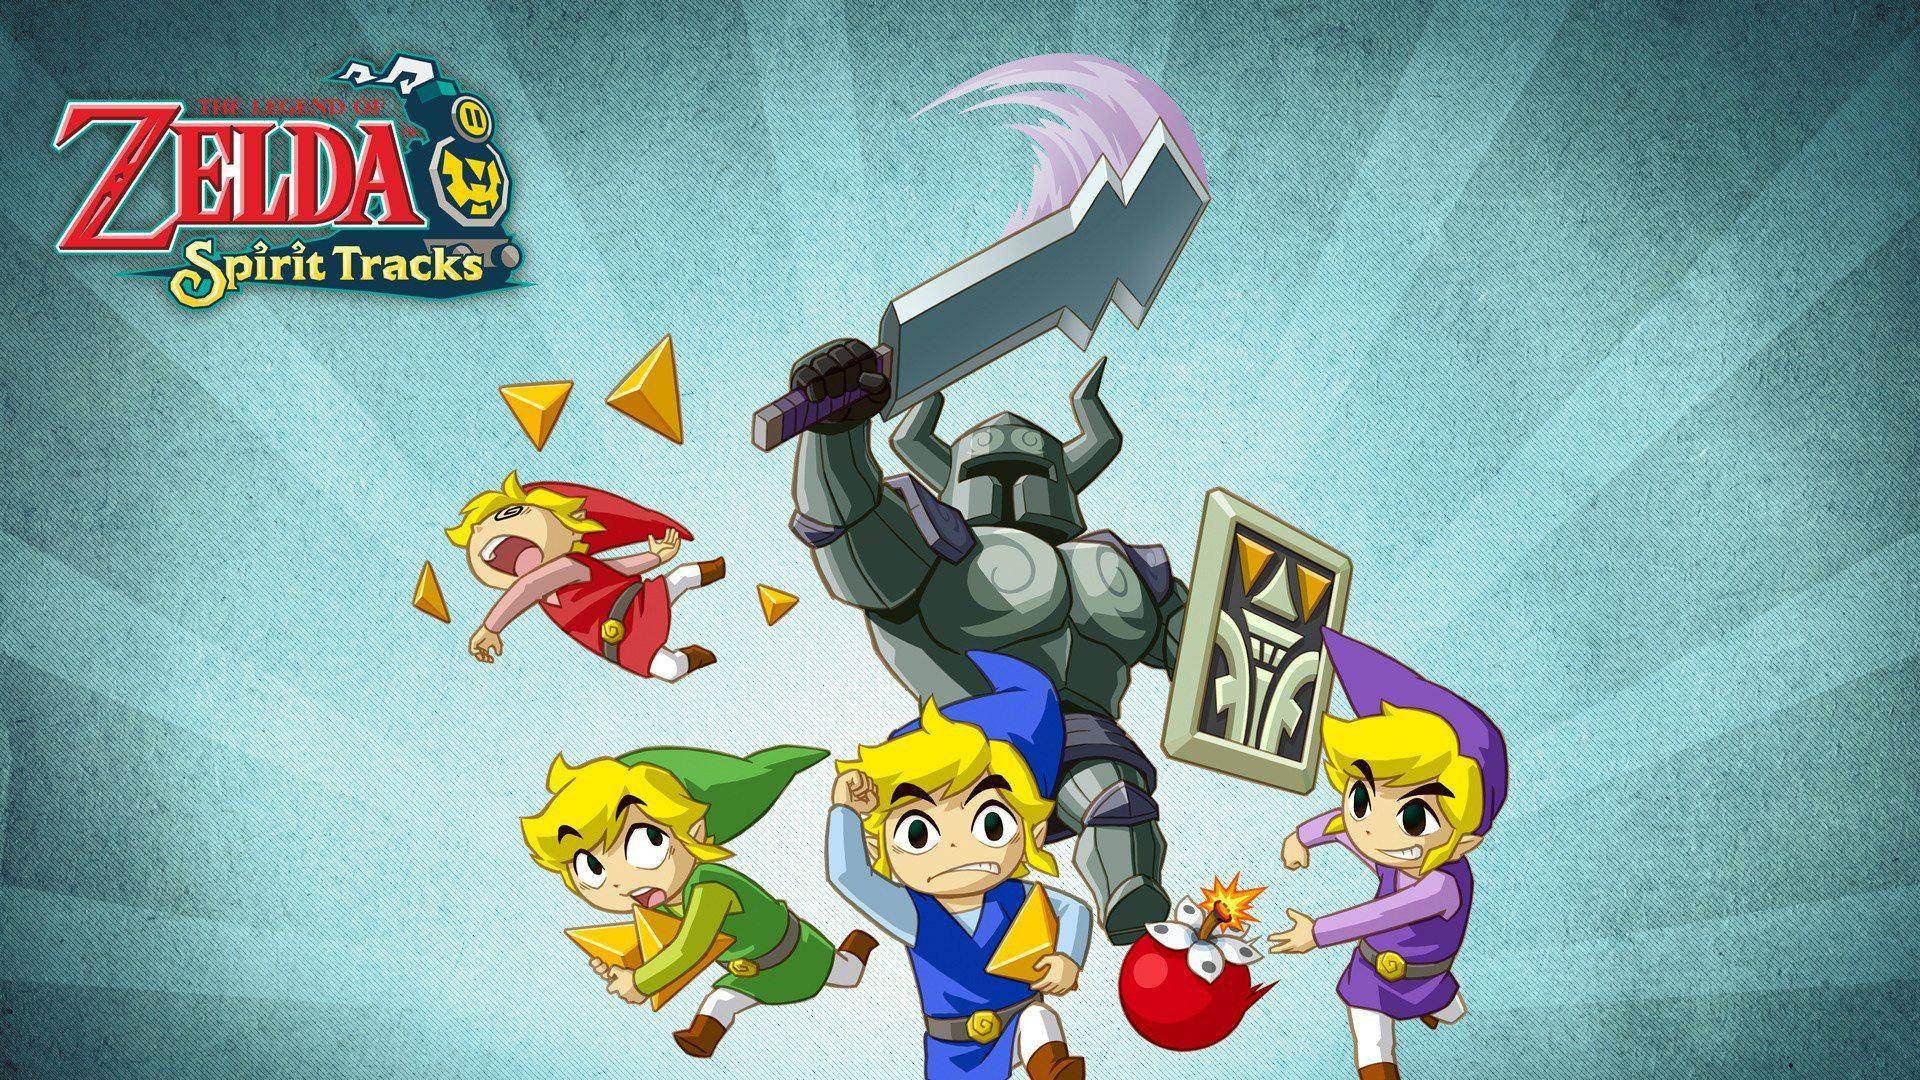 Video Game The Legend of Zelda: Spirit Tracks HD Wallpaper | Background Image